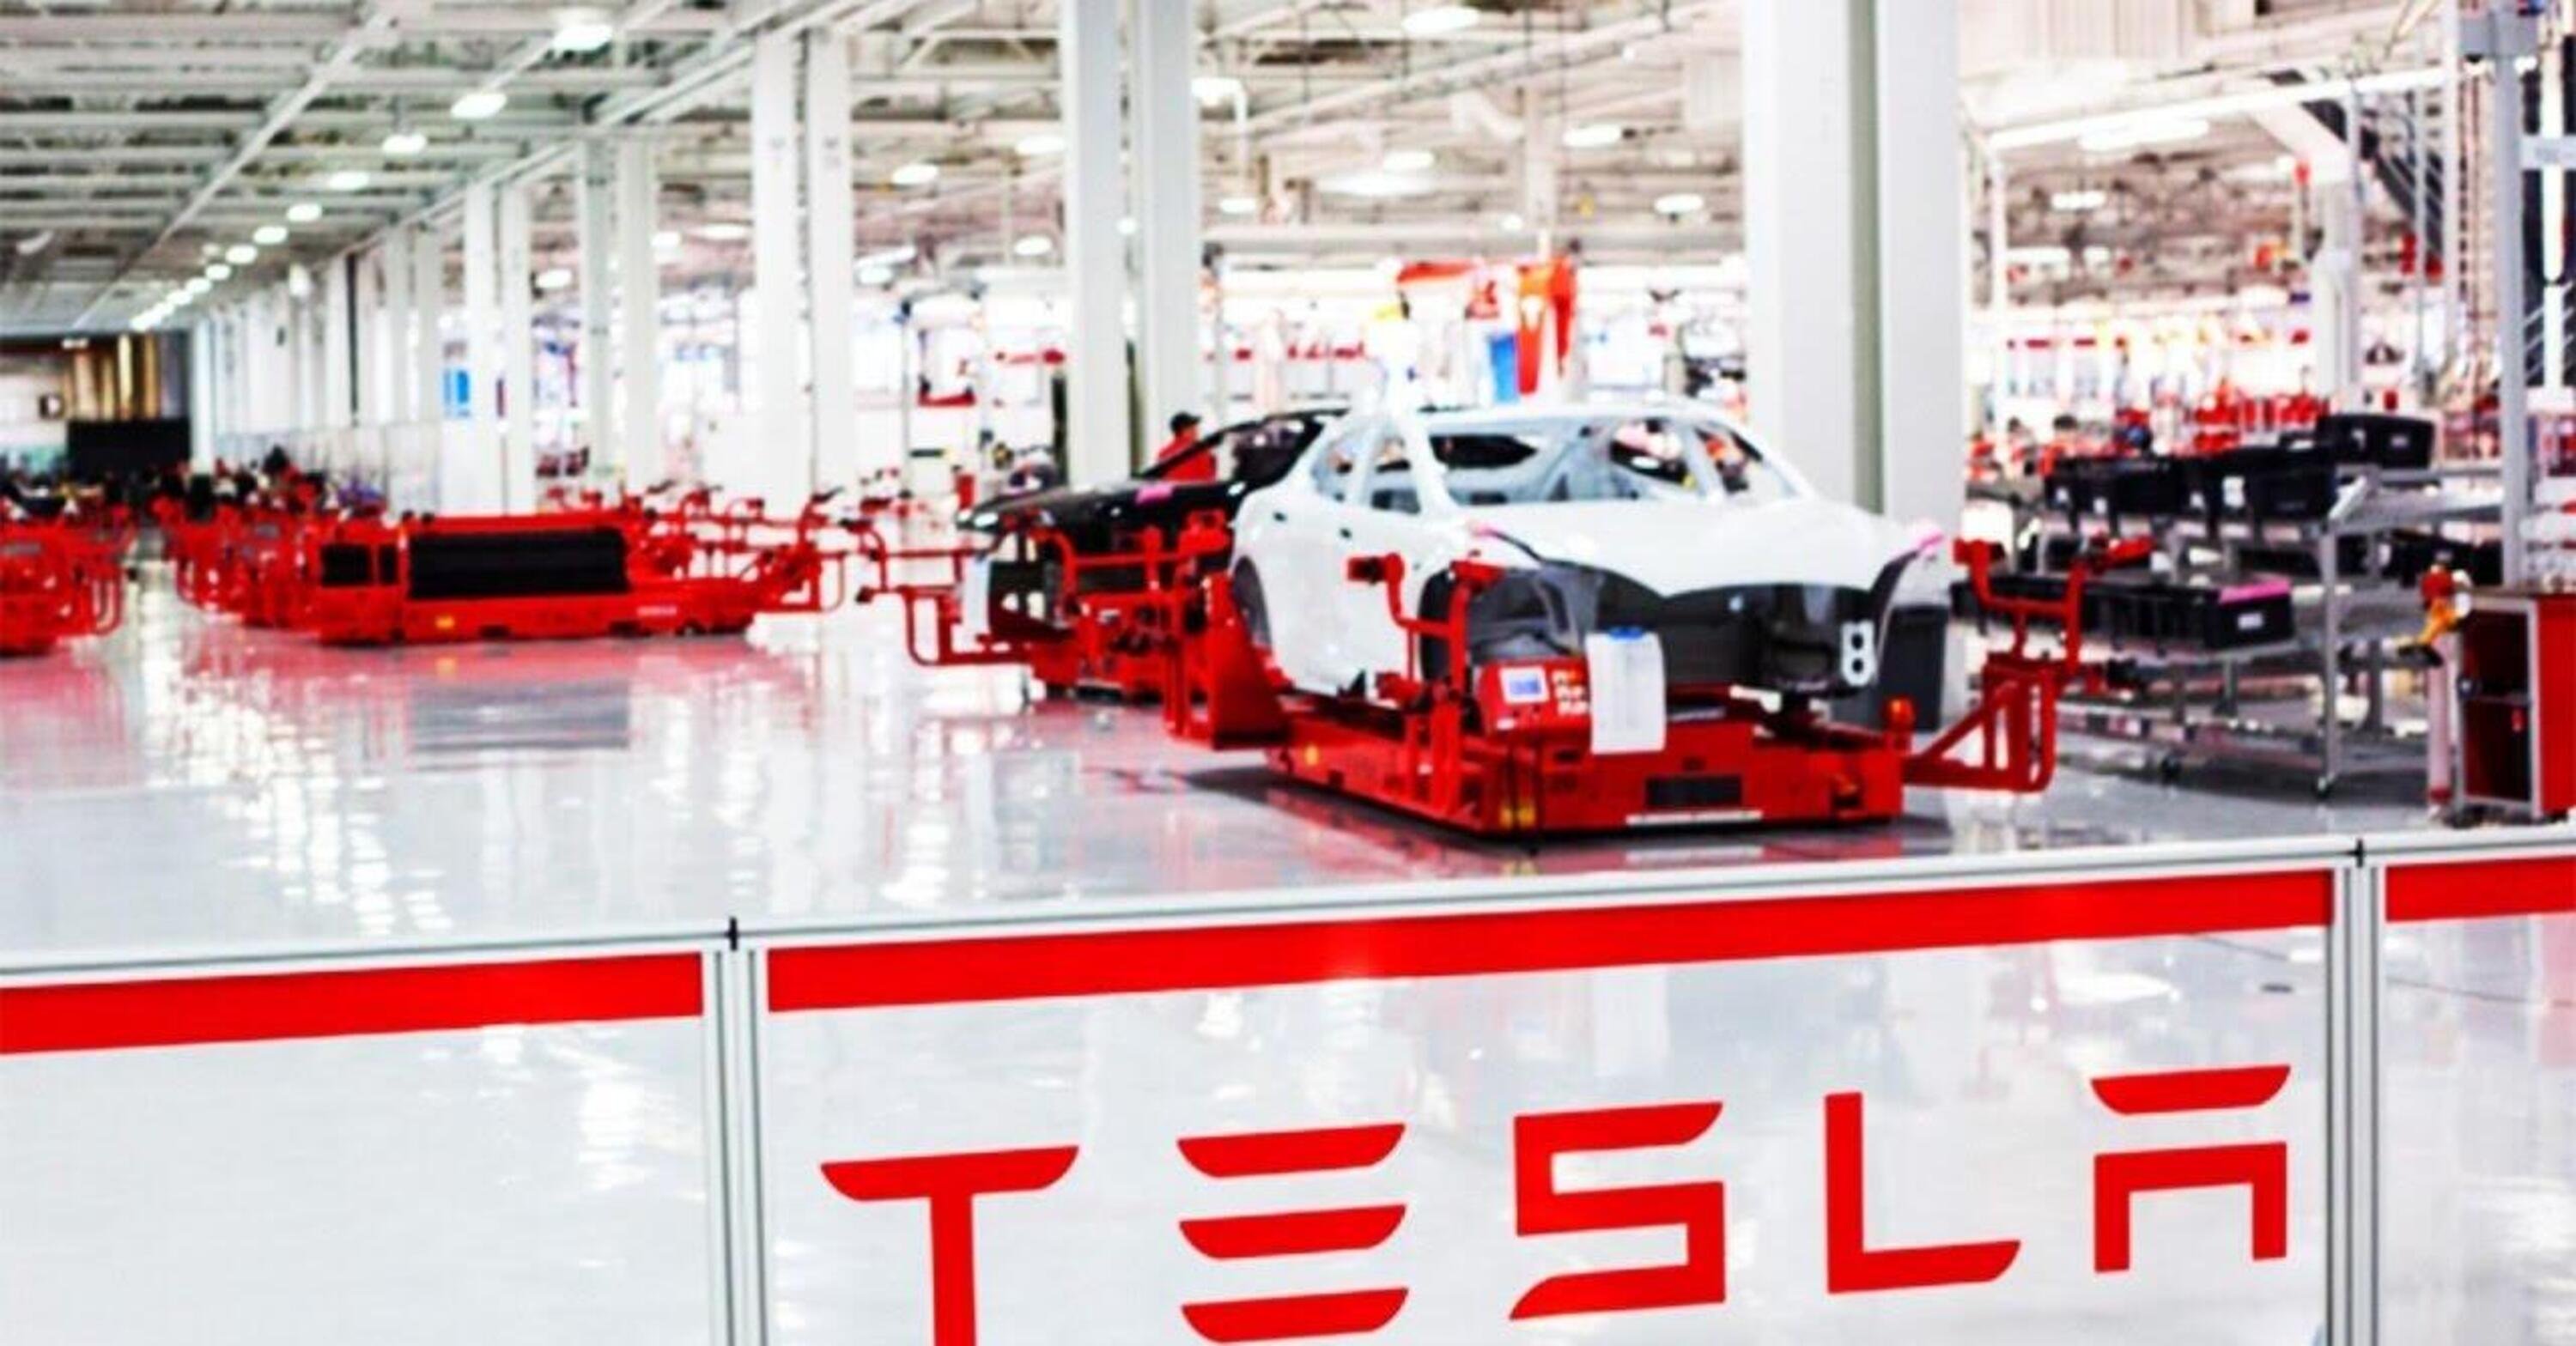 Tesla, nuovo taglio dei prezzi?